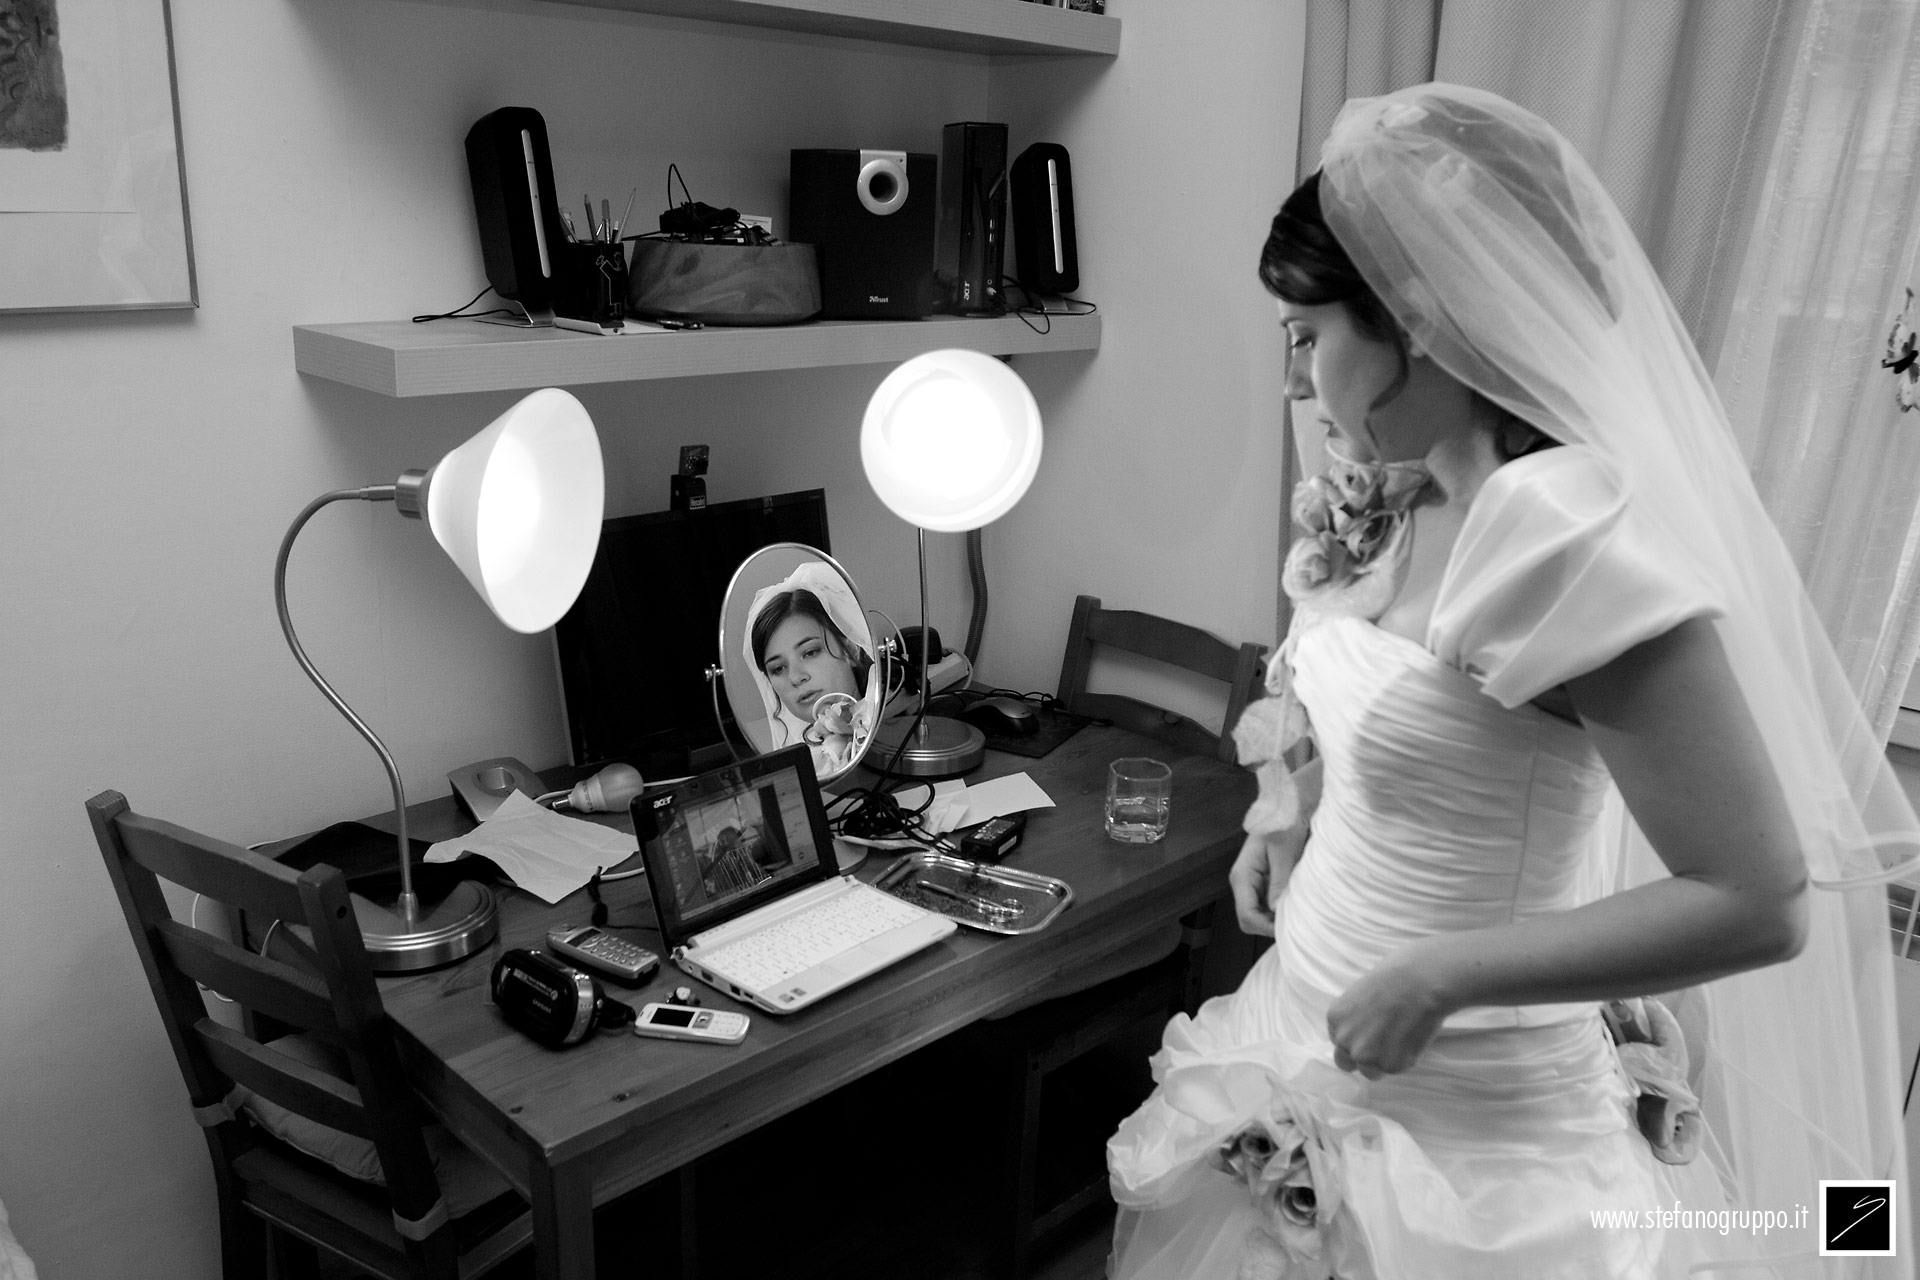 matrimonio | La preparazione degli Sposi | fotografia di Stefano Gruppo